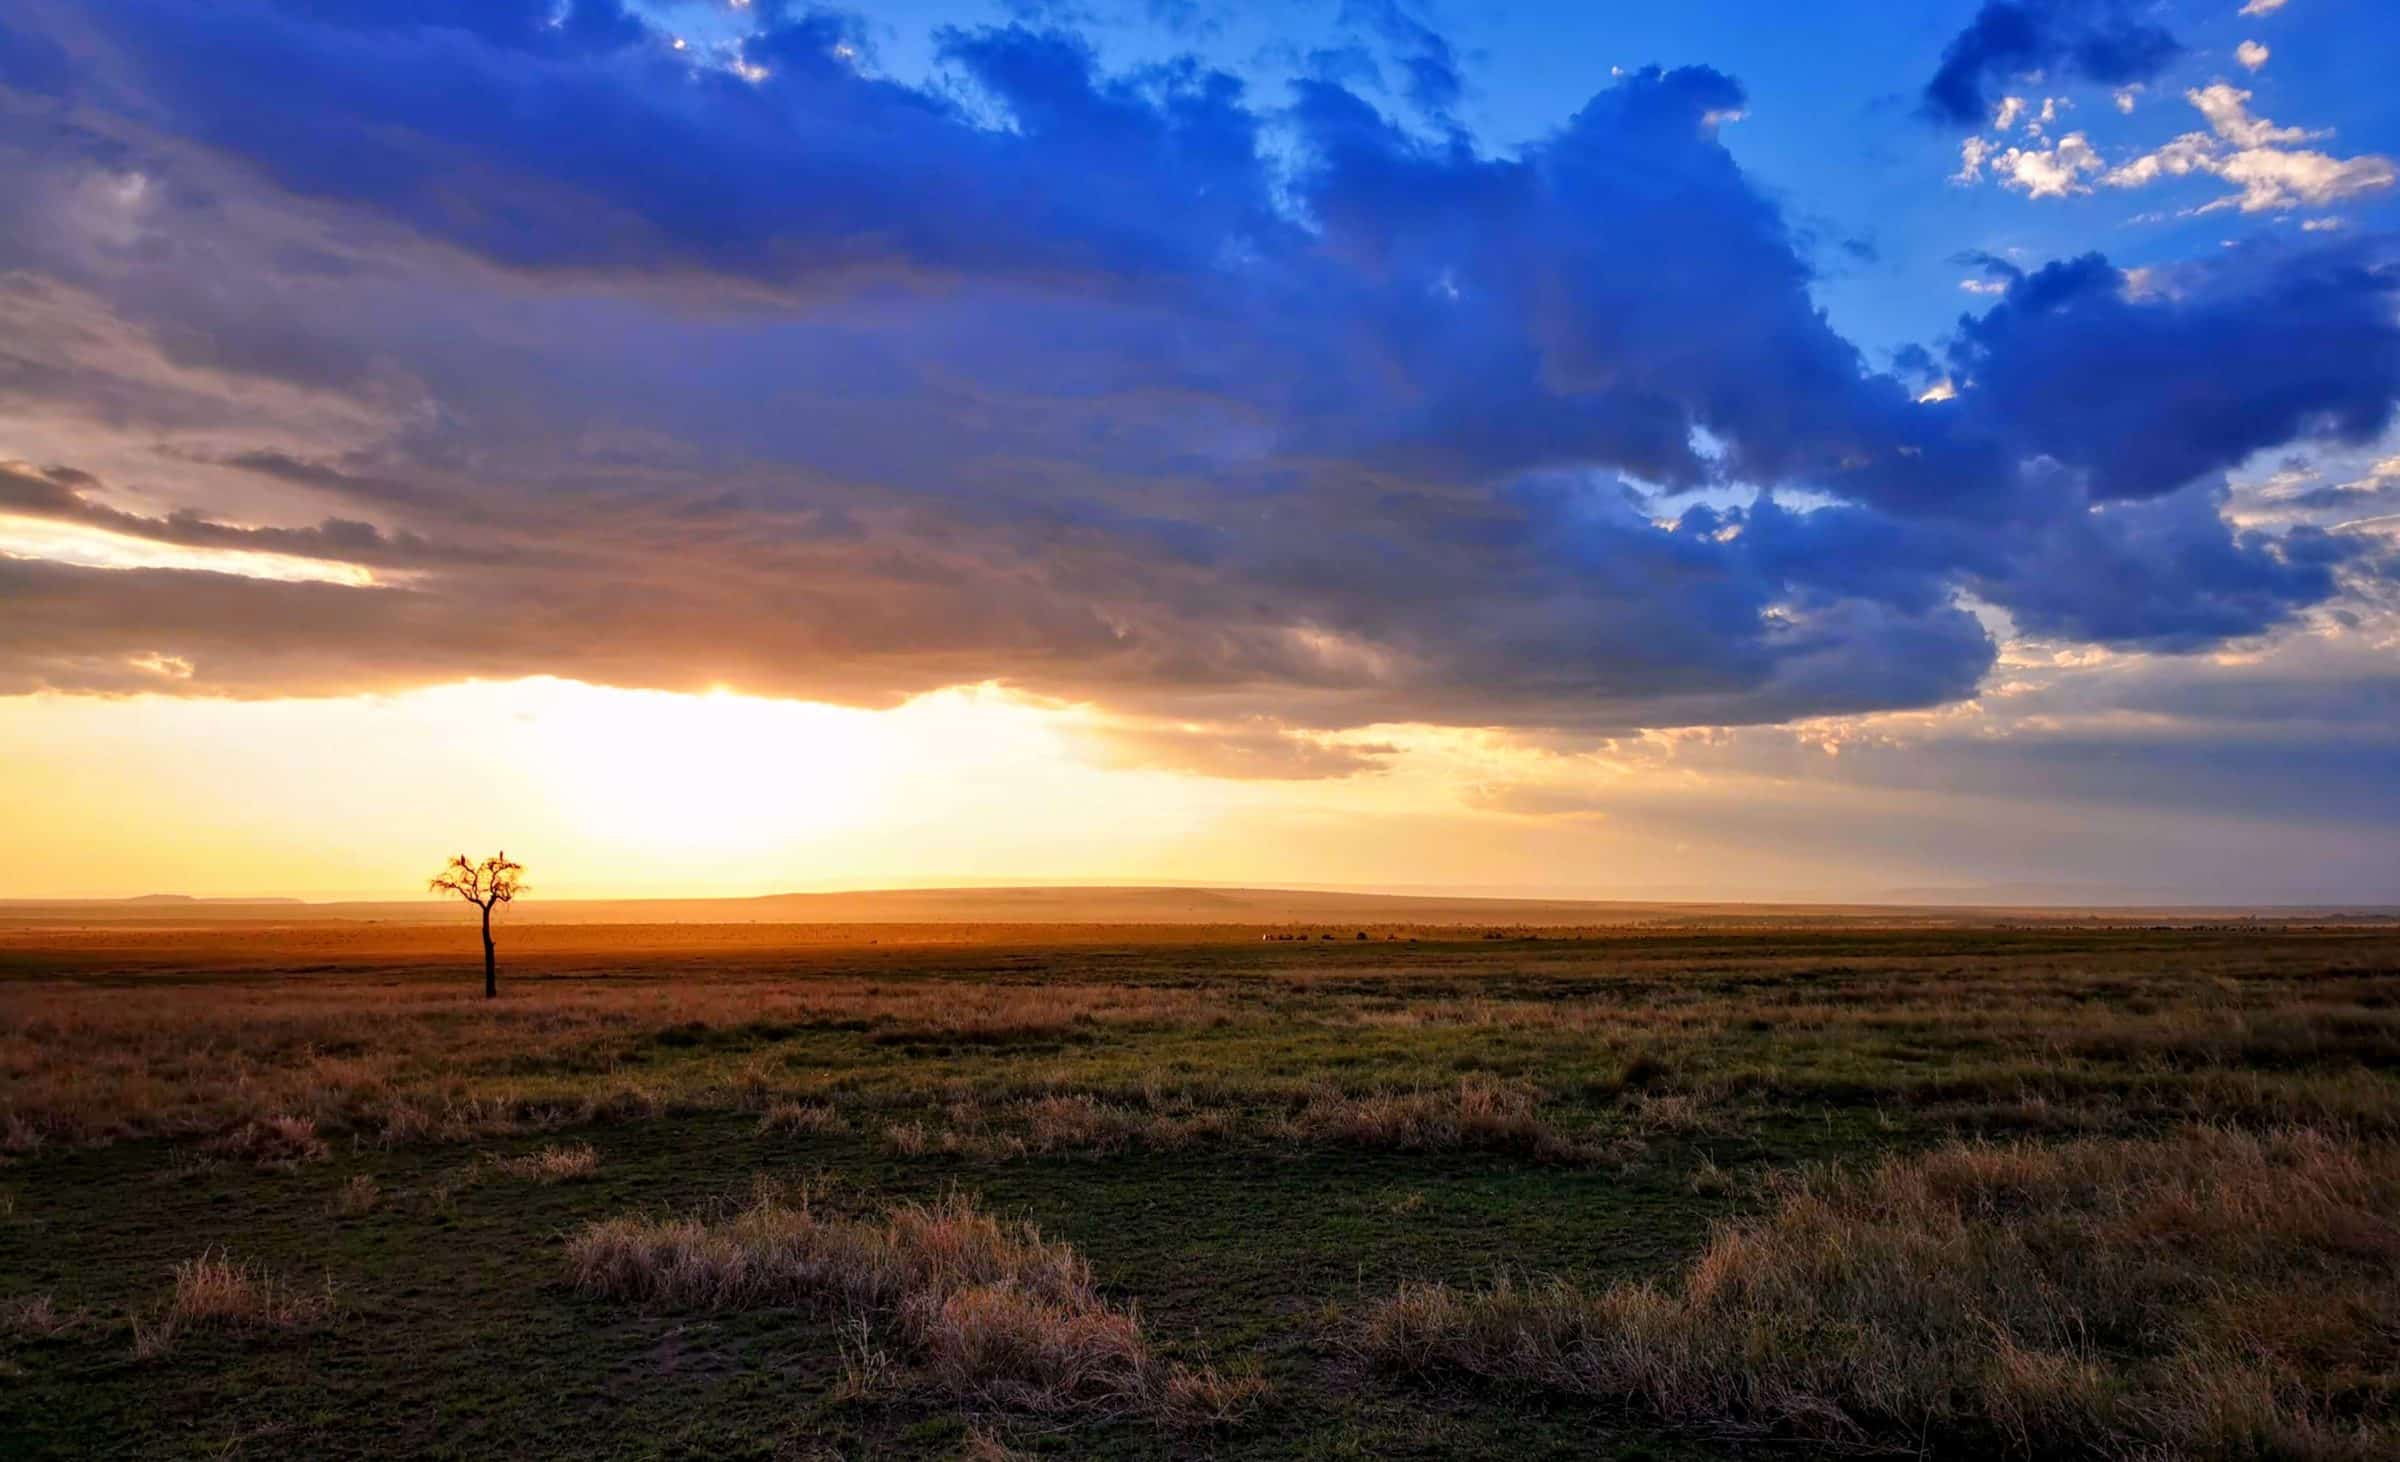 Store skyer, herreløse træer og nogle dyr i baggrunden. Bare endnu en dag i Maasai Mara